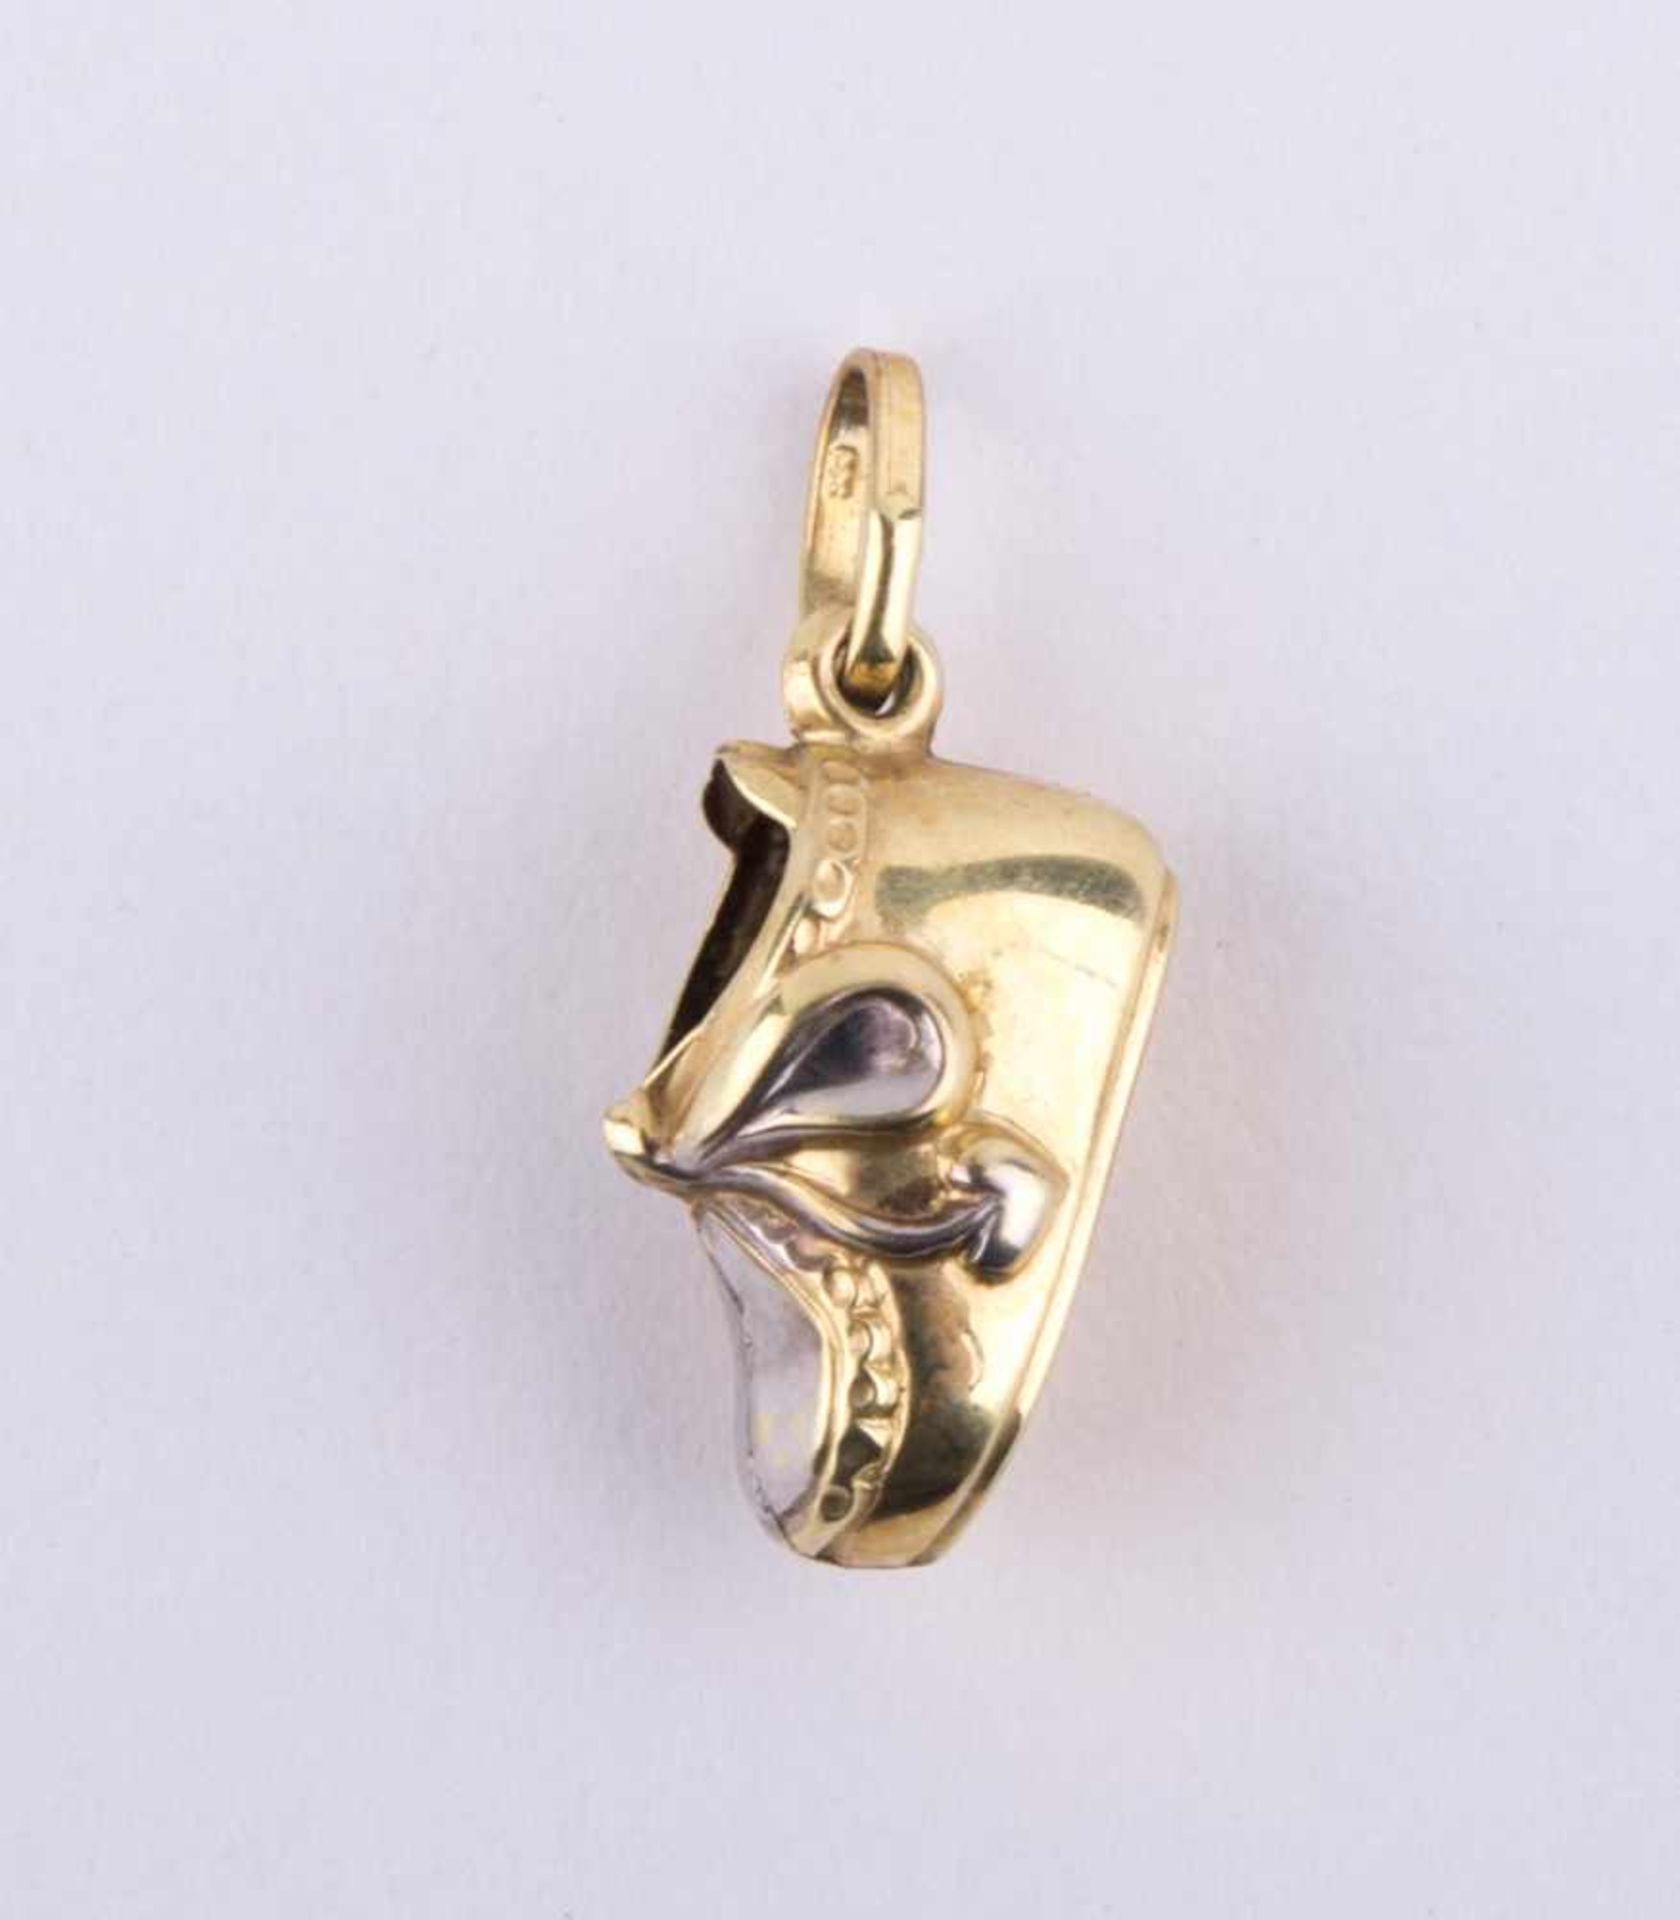 Anhänger als Schuh / Gold pendant made as a shoe GG 333/000, L: ca. 12 mm, Gewicht ca. 0,4 g.